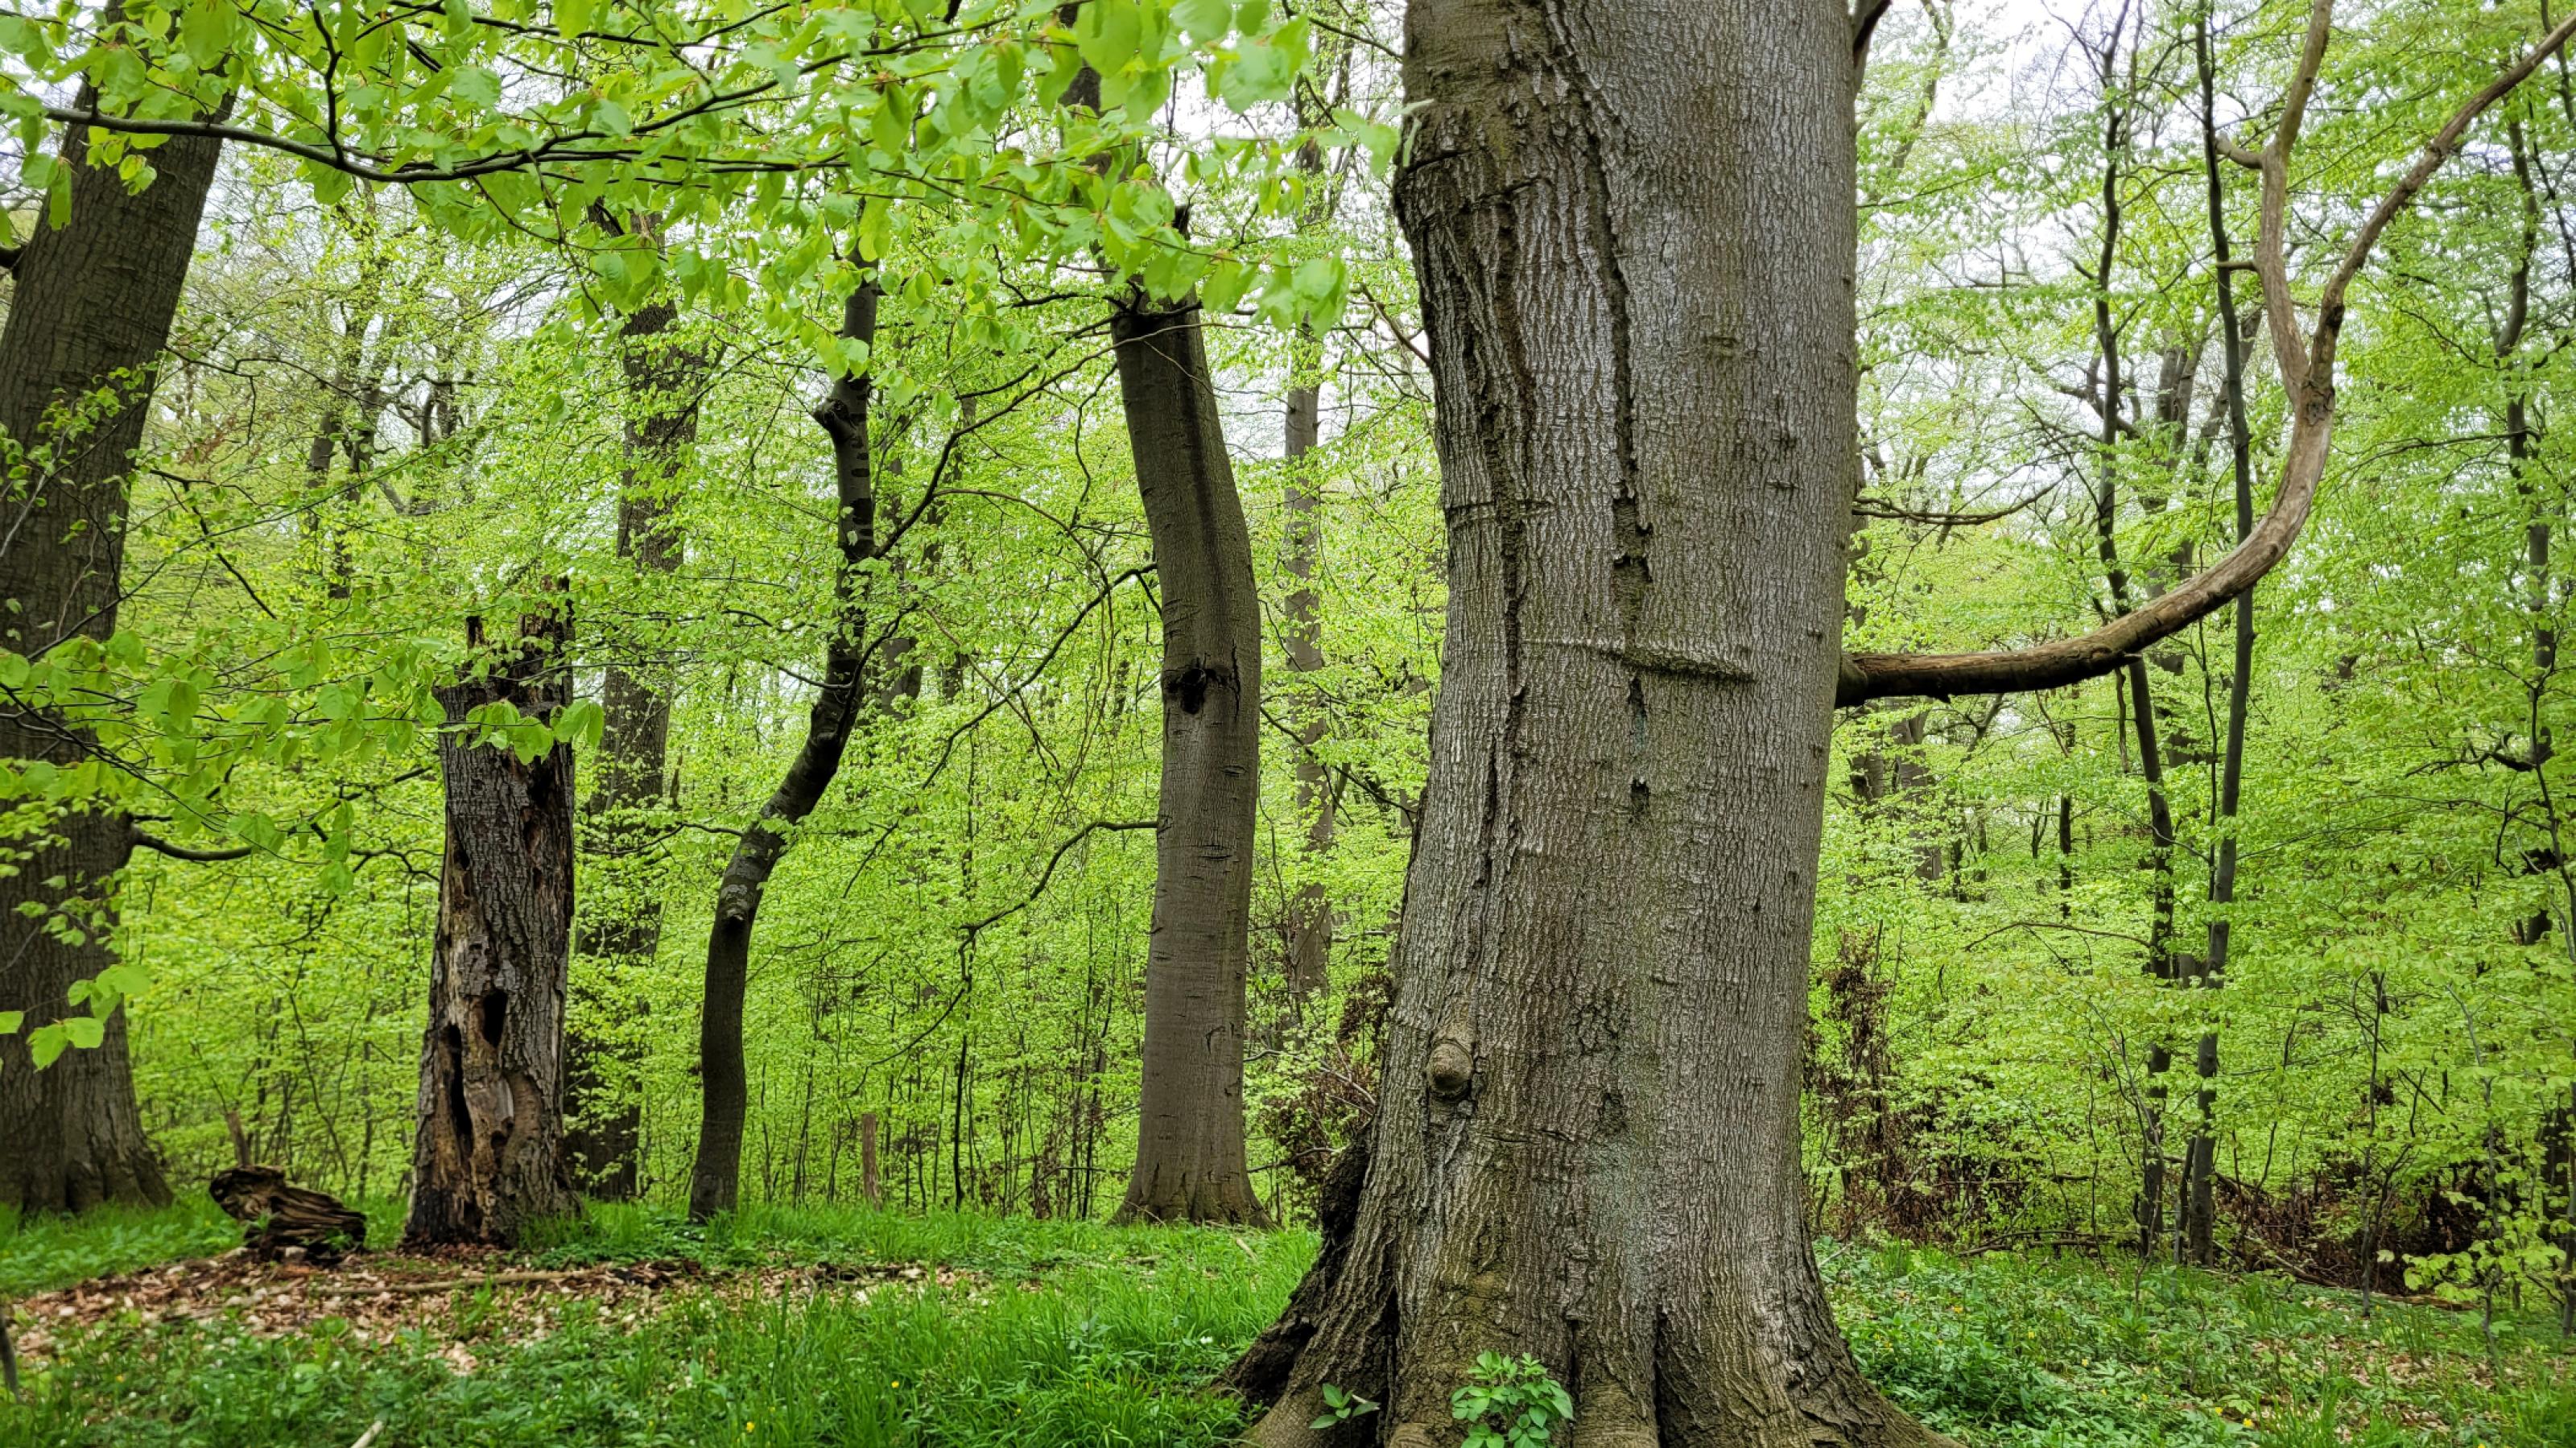 Uralte Eichen stehen locker im grünen Wald